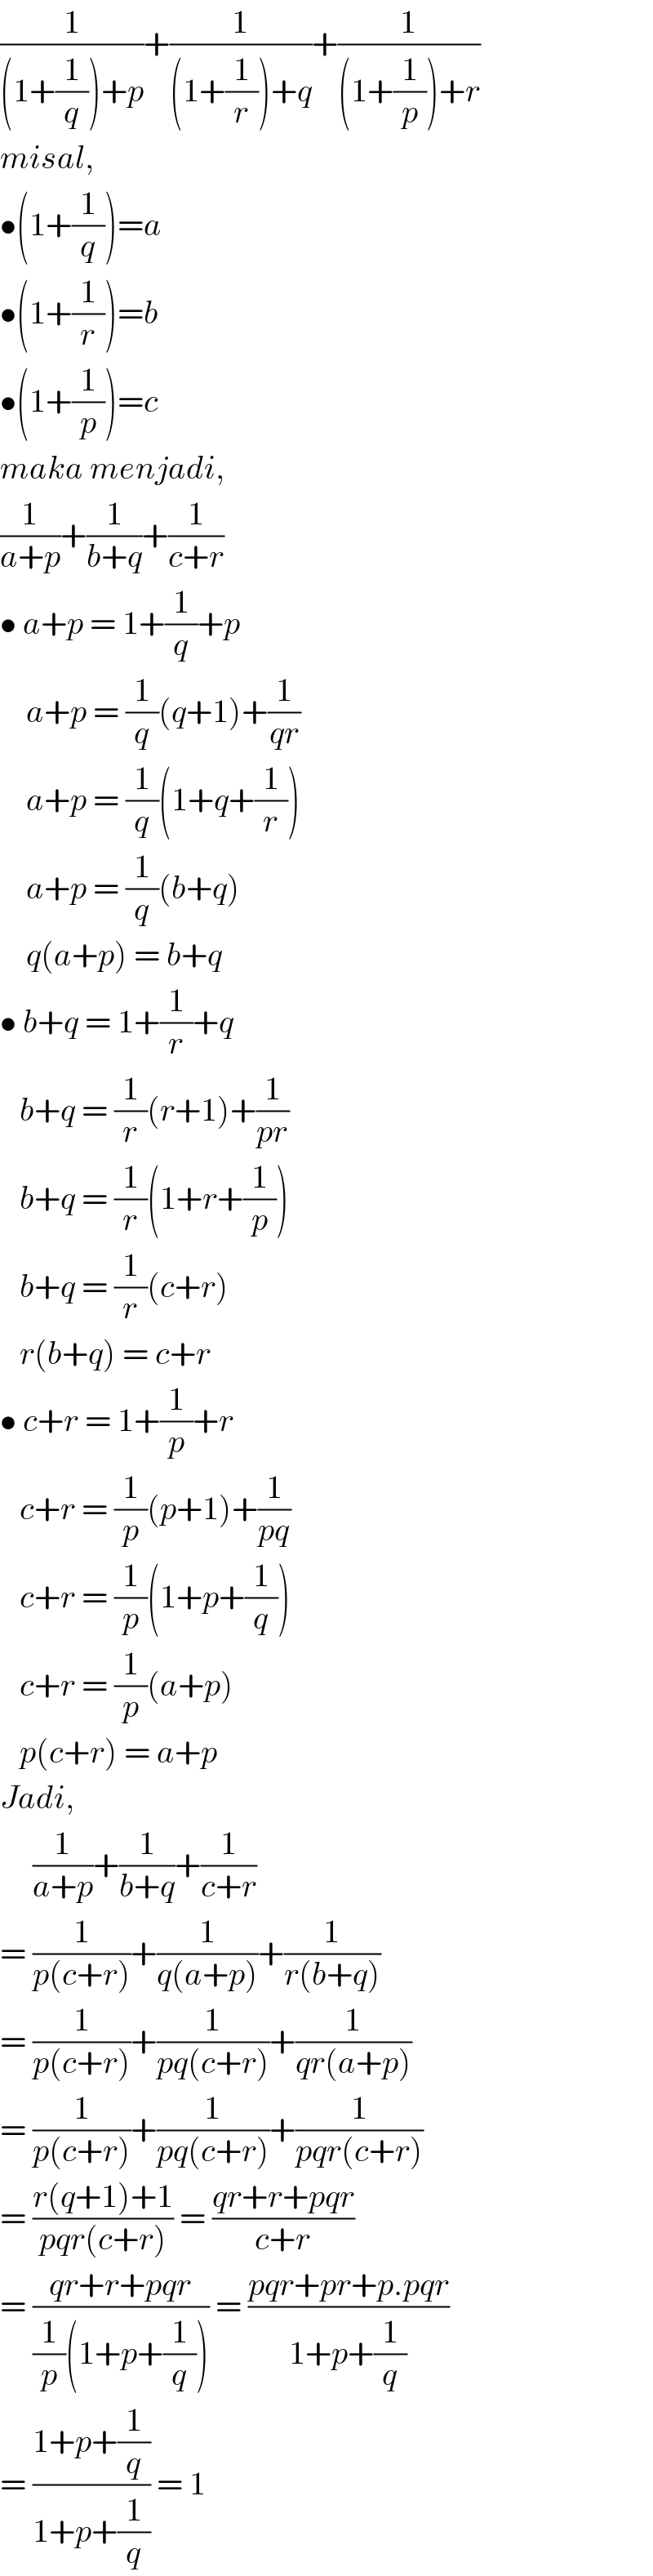 (1/((1+(1/q))+p))+(1/((1+(1/r))+q))+(1/((1+(1/p))+r))  misal,  •(1+(1/q))=a  •(1+(1/r))=b  •(1+(1/p))=c  maka menjadi,  (1/(a+p))+(1/(b+q))+(1/(c+r))  • a+p = 1+(1/q)+p      a+p = (1/q)(q+1)+(1/(qr))      a+p = (1/q)(1+q+(1/r))      a+p = (1/q)(b+q)      q(a+p) = b+q  • b+q = 1+(1/r)+q     b+q = (1/r)(r+1)+(1/(pr))     b+q = (1/r)(1+r+(1/p))     b+q = (1/r)(c+r)     r(b+q) = c+r  • c+r = 1+(1/p)+r     c+r = (1/p)(p+1)+(1/(pq))     c+r = (1/p)(1+p+(1/q))     c+r = (1/p)(a+p)     p(c+r) = a+p  Jadi,       (1/(a+p))+(1/(b+q))+(1/(c+r))  = (1/(p(c+r)))+(1/(q(a+p)))+(1/(r(b+q)))  = (1/(p(c+r)))+(1/(pq(c+r)))+(1/(qr(a+p)))  = (1/(p(c+r)))+(1/(pq(c+r)))+(1/(pqr(c+r)))  = ((r(q+1)+1)/(pqr(c+r))) = ((qr+r+pqr)/(c+r))  = ((qr+r+pqr)/((1/p)(1+p+(1/q)))) = ((pqr+pr+p.pqr)/(1+p+(1/q)))  = ((1+p+(1/q))/(1+p+(1/q))) = 1  